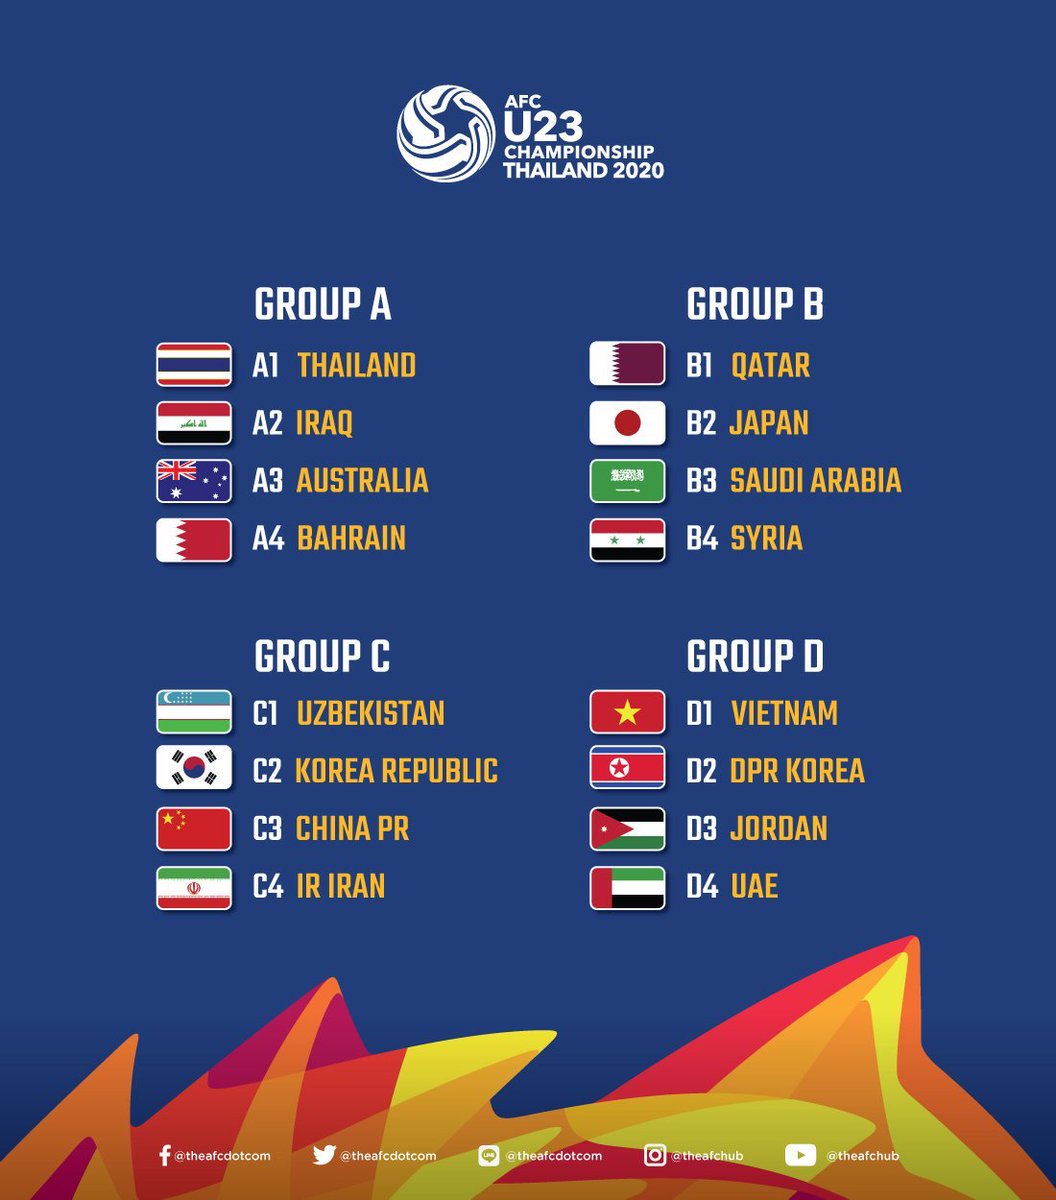 قرعة لكأس آسيا تحت 23 عامًا 🏆📸
المجموعة الثانية 
السعودية - قطر - اليابان - سوريا 🔥🔥